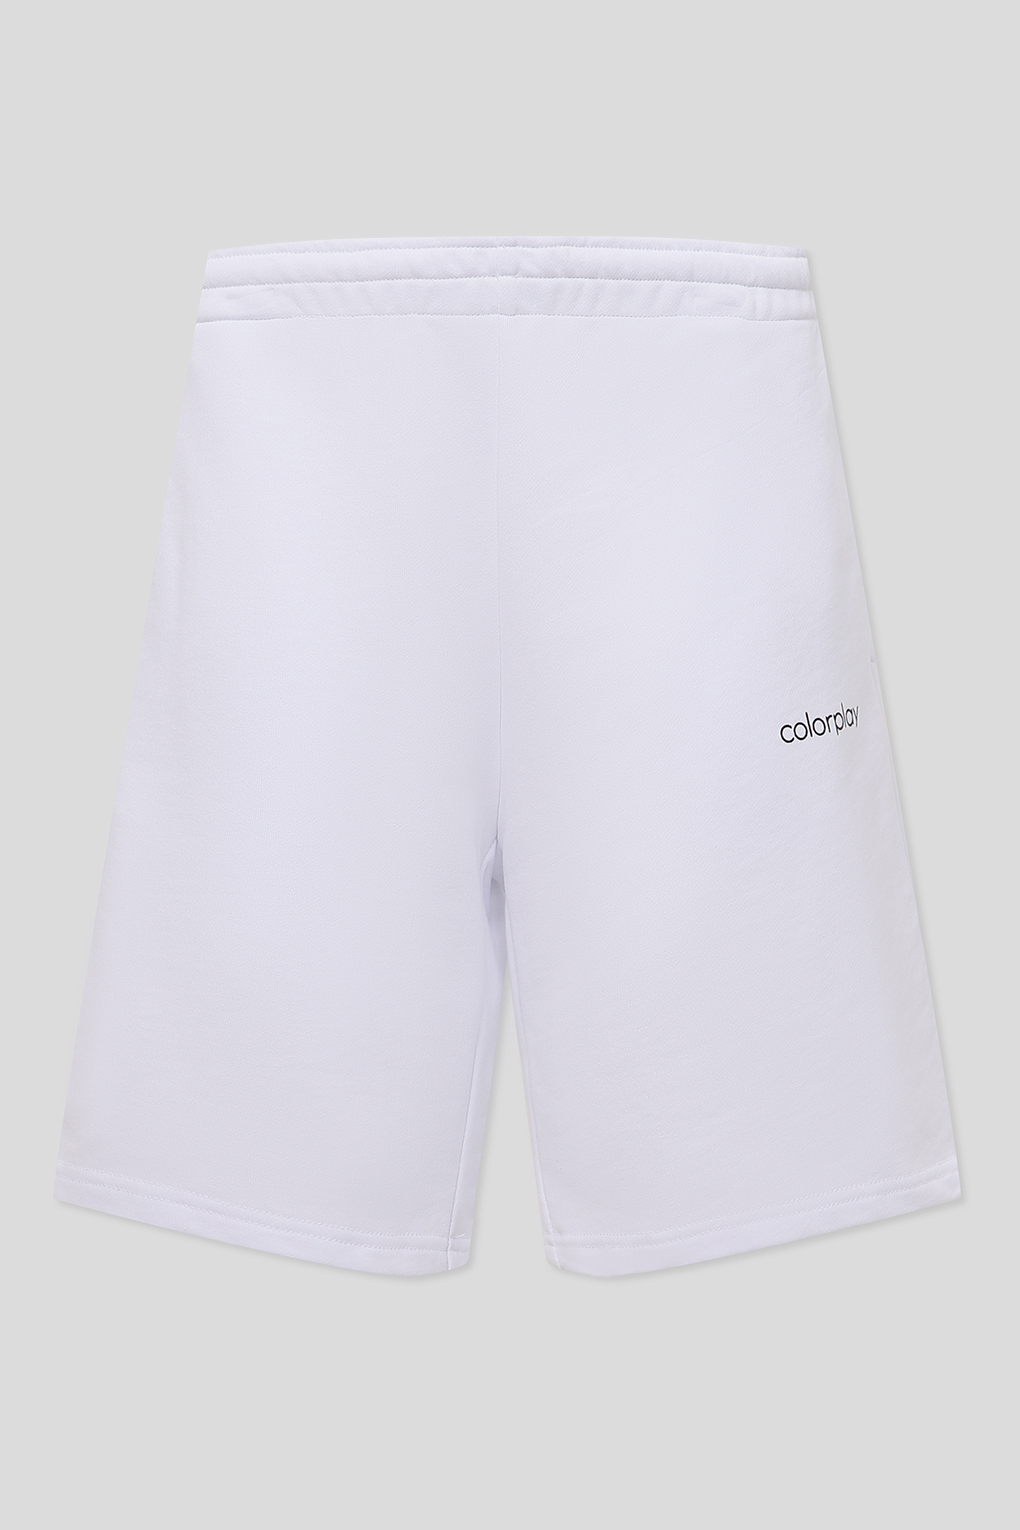 Повседневные шорты мужские COLORPLAY CP22041625-002 белые 2XL